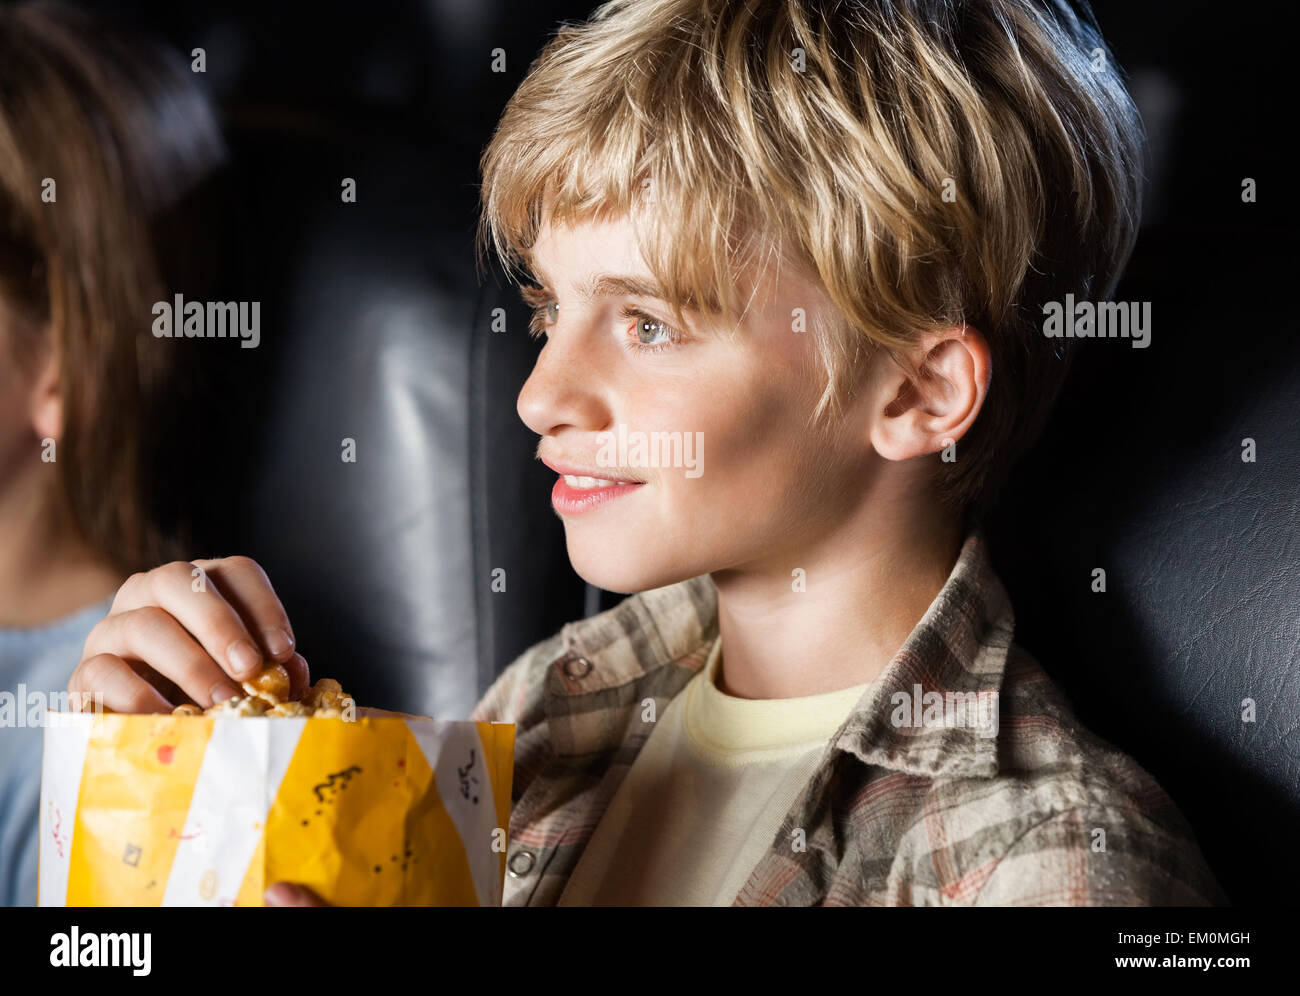 Junge essen Popcorn Film Stockfoto